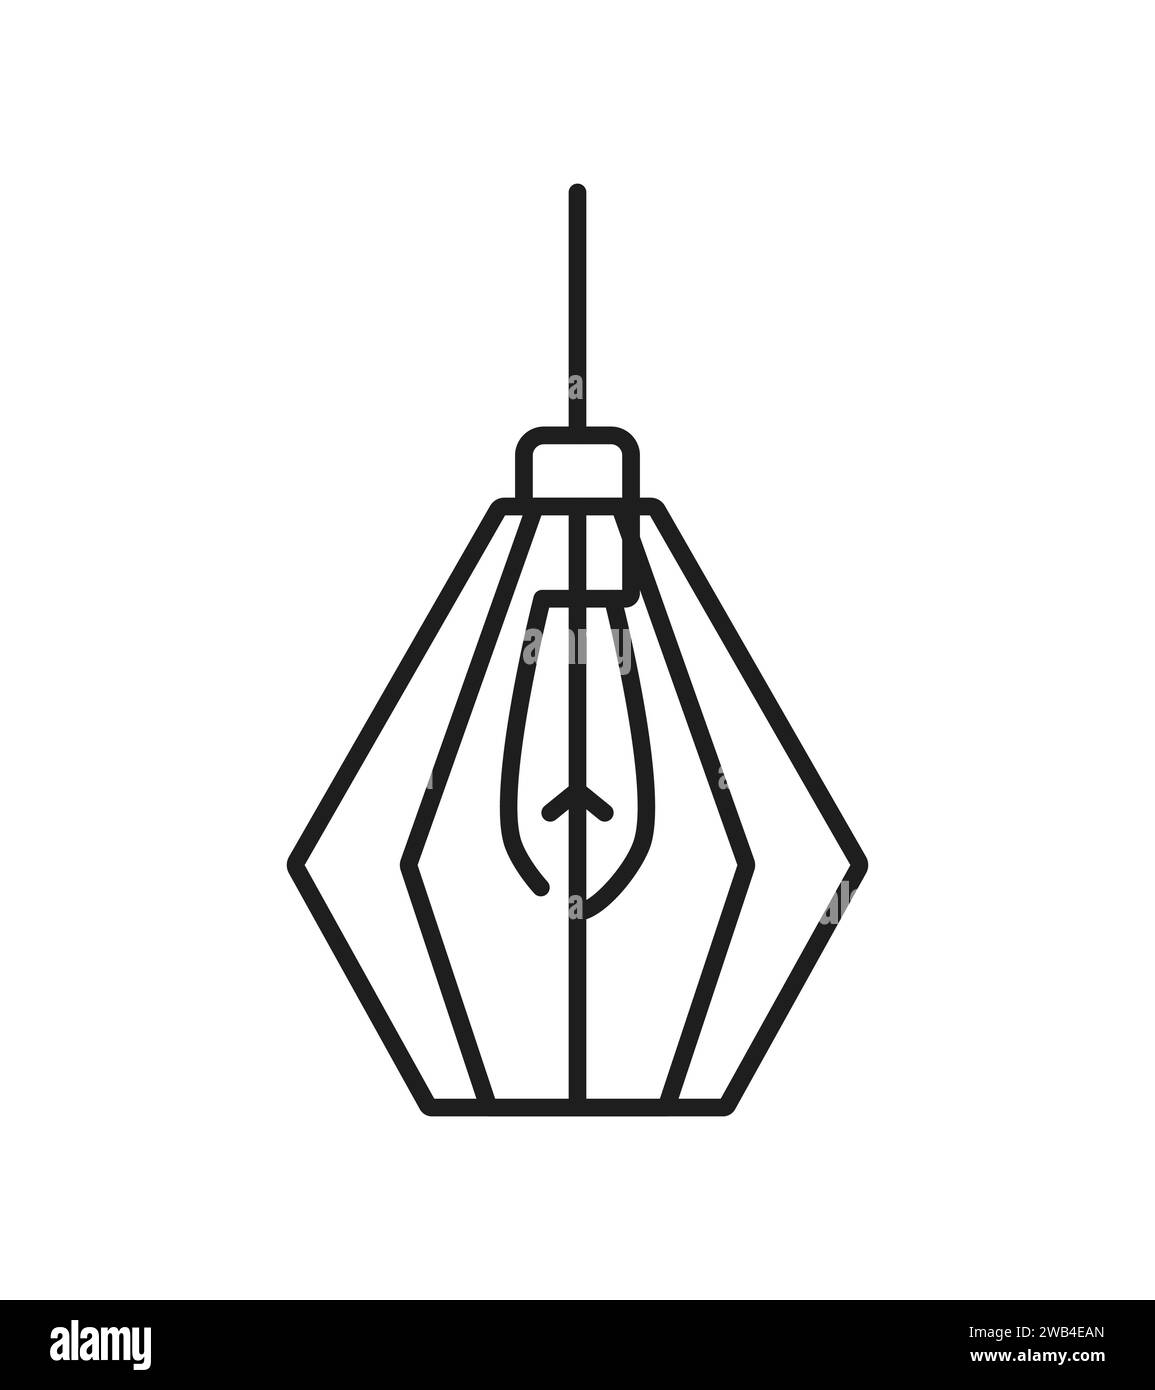 Hängeleuchte oder Deckenleuchte Liniensymbol für Beleuchtungskörper im Umrissvektor. Hängeleuchte mit Glühbirne und Lampenschirm aus Metalldrahtrahmen, Innenarchitektur und Hausbeleuchtung Stock Vektor